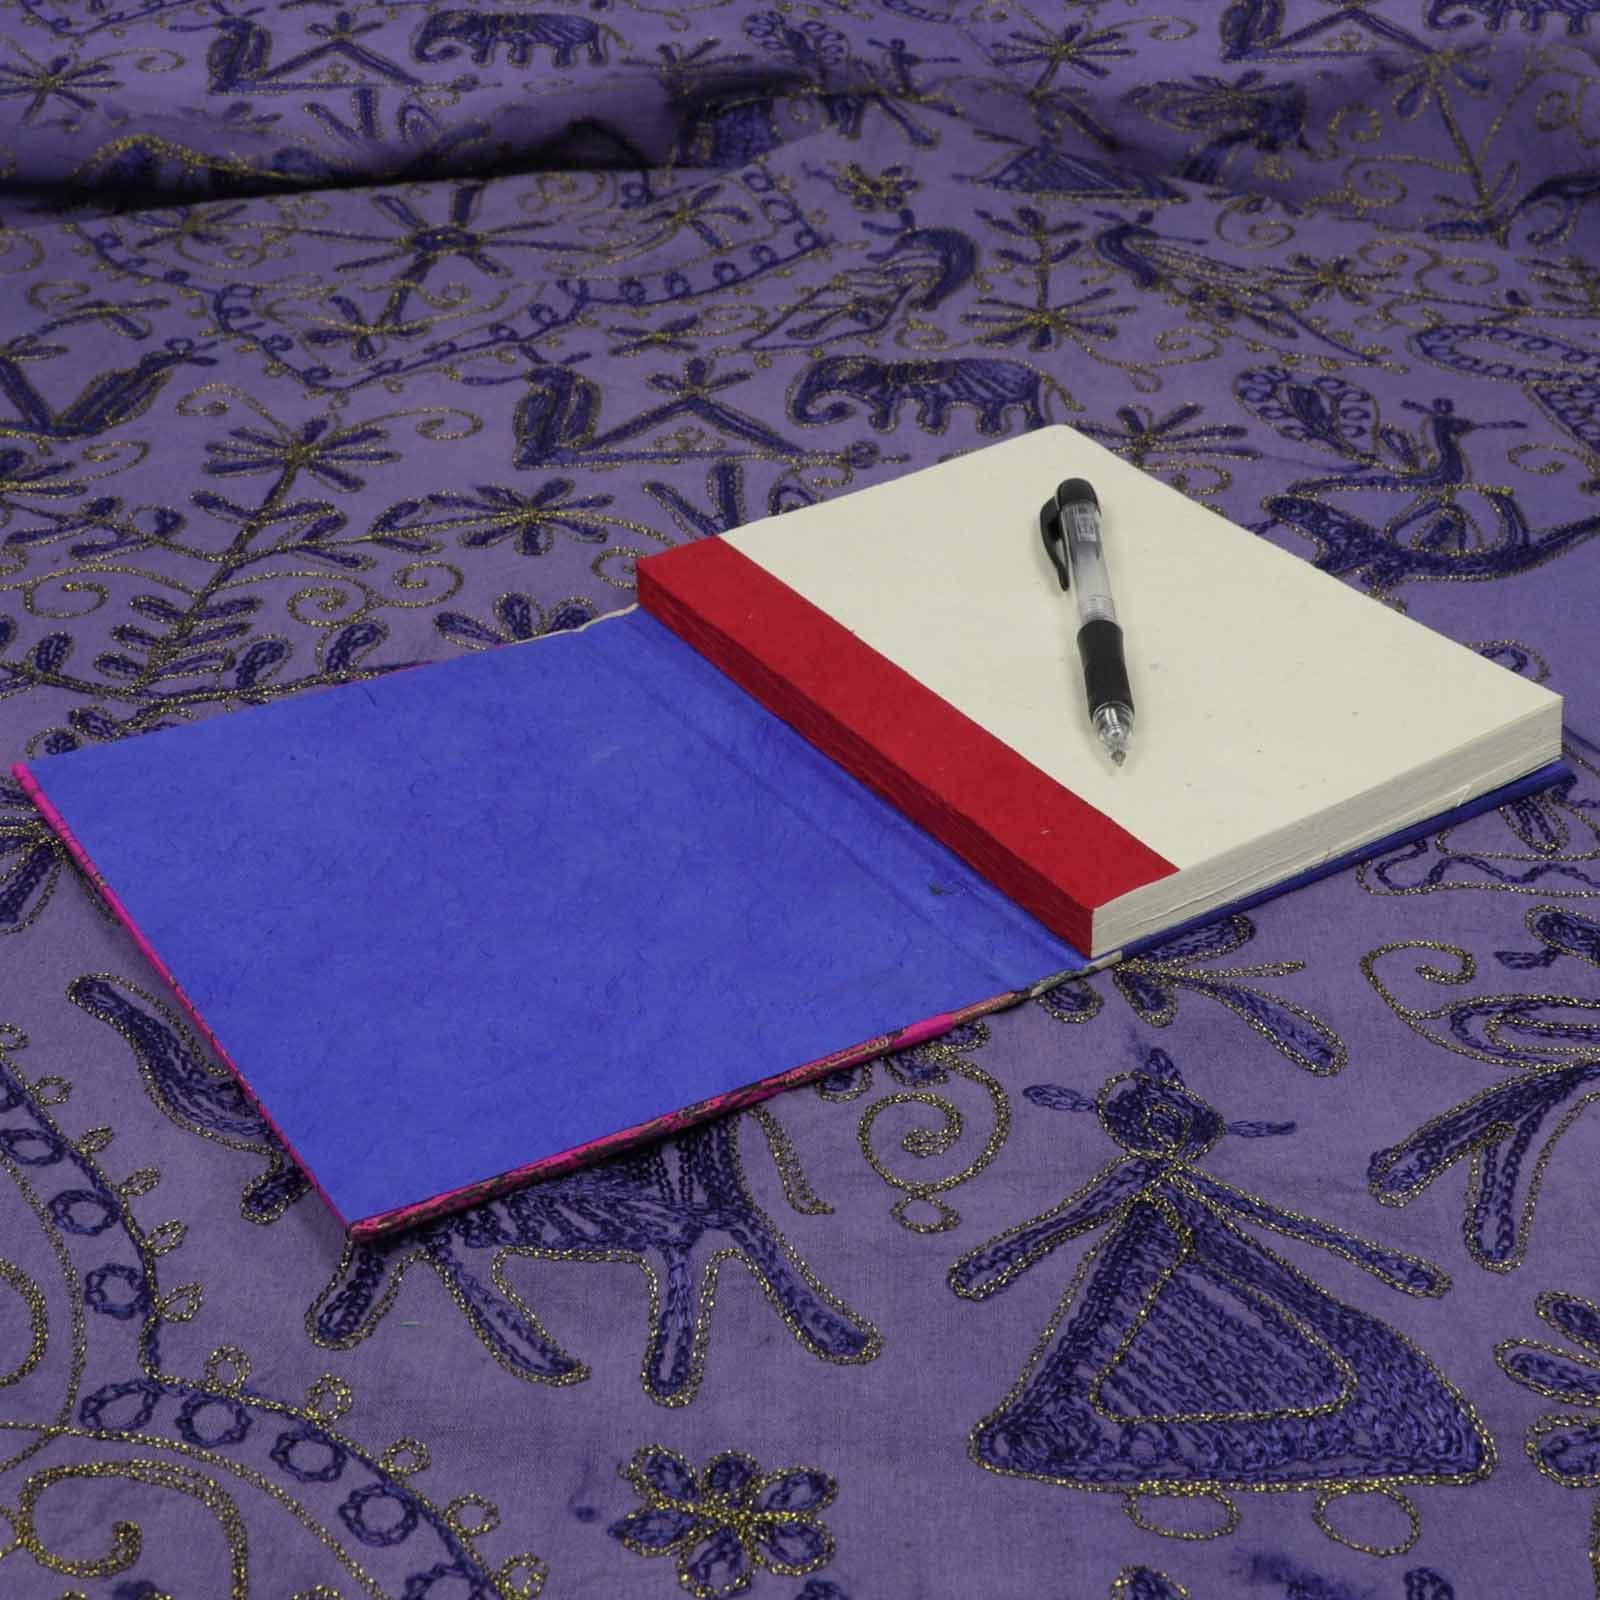 KUNST UND MAGIE Tagebuch Handgemacht Poesie Notizbuch Tagebuch Mandala Lokta Papier Nachhaltig